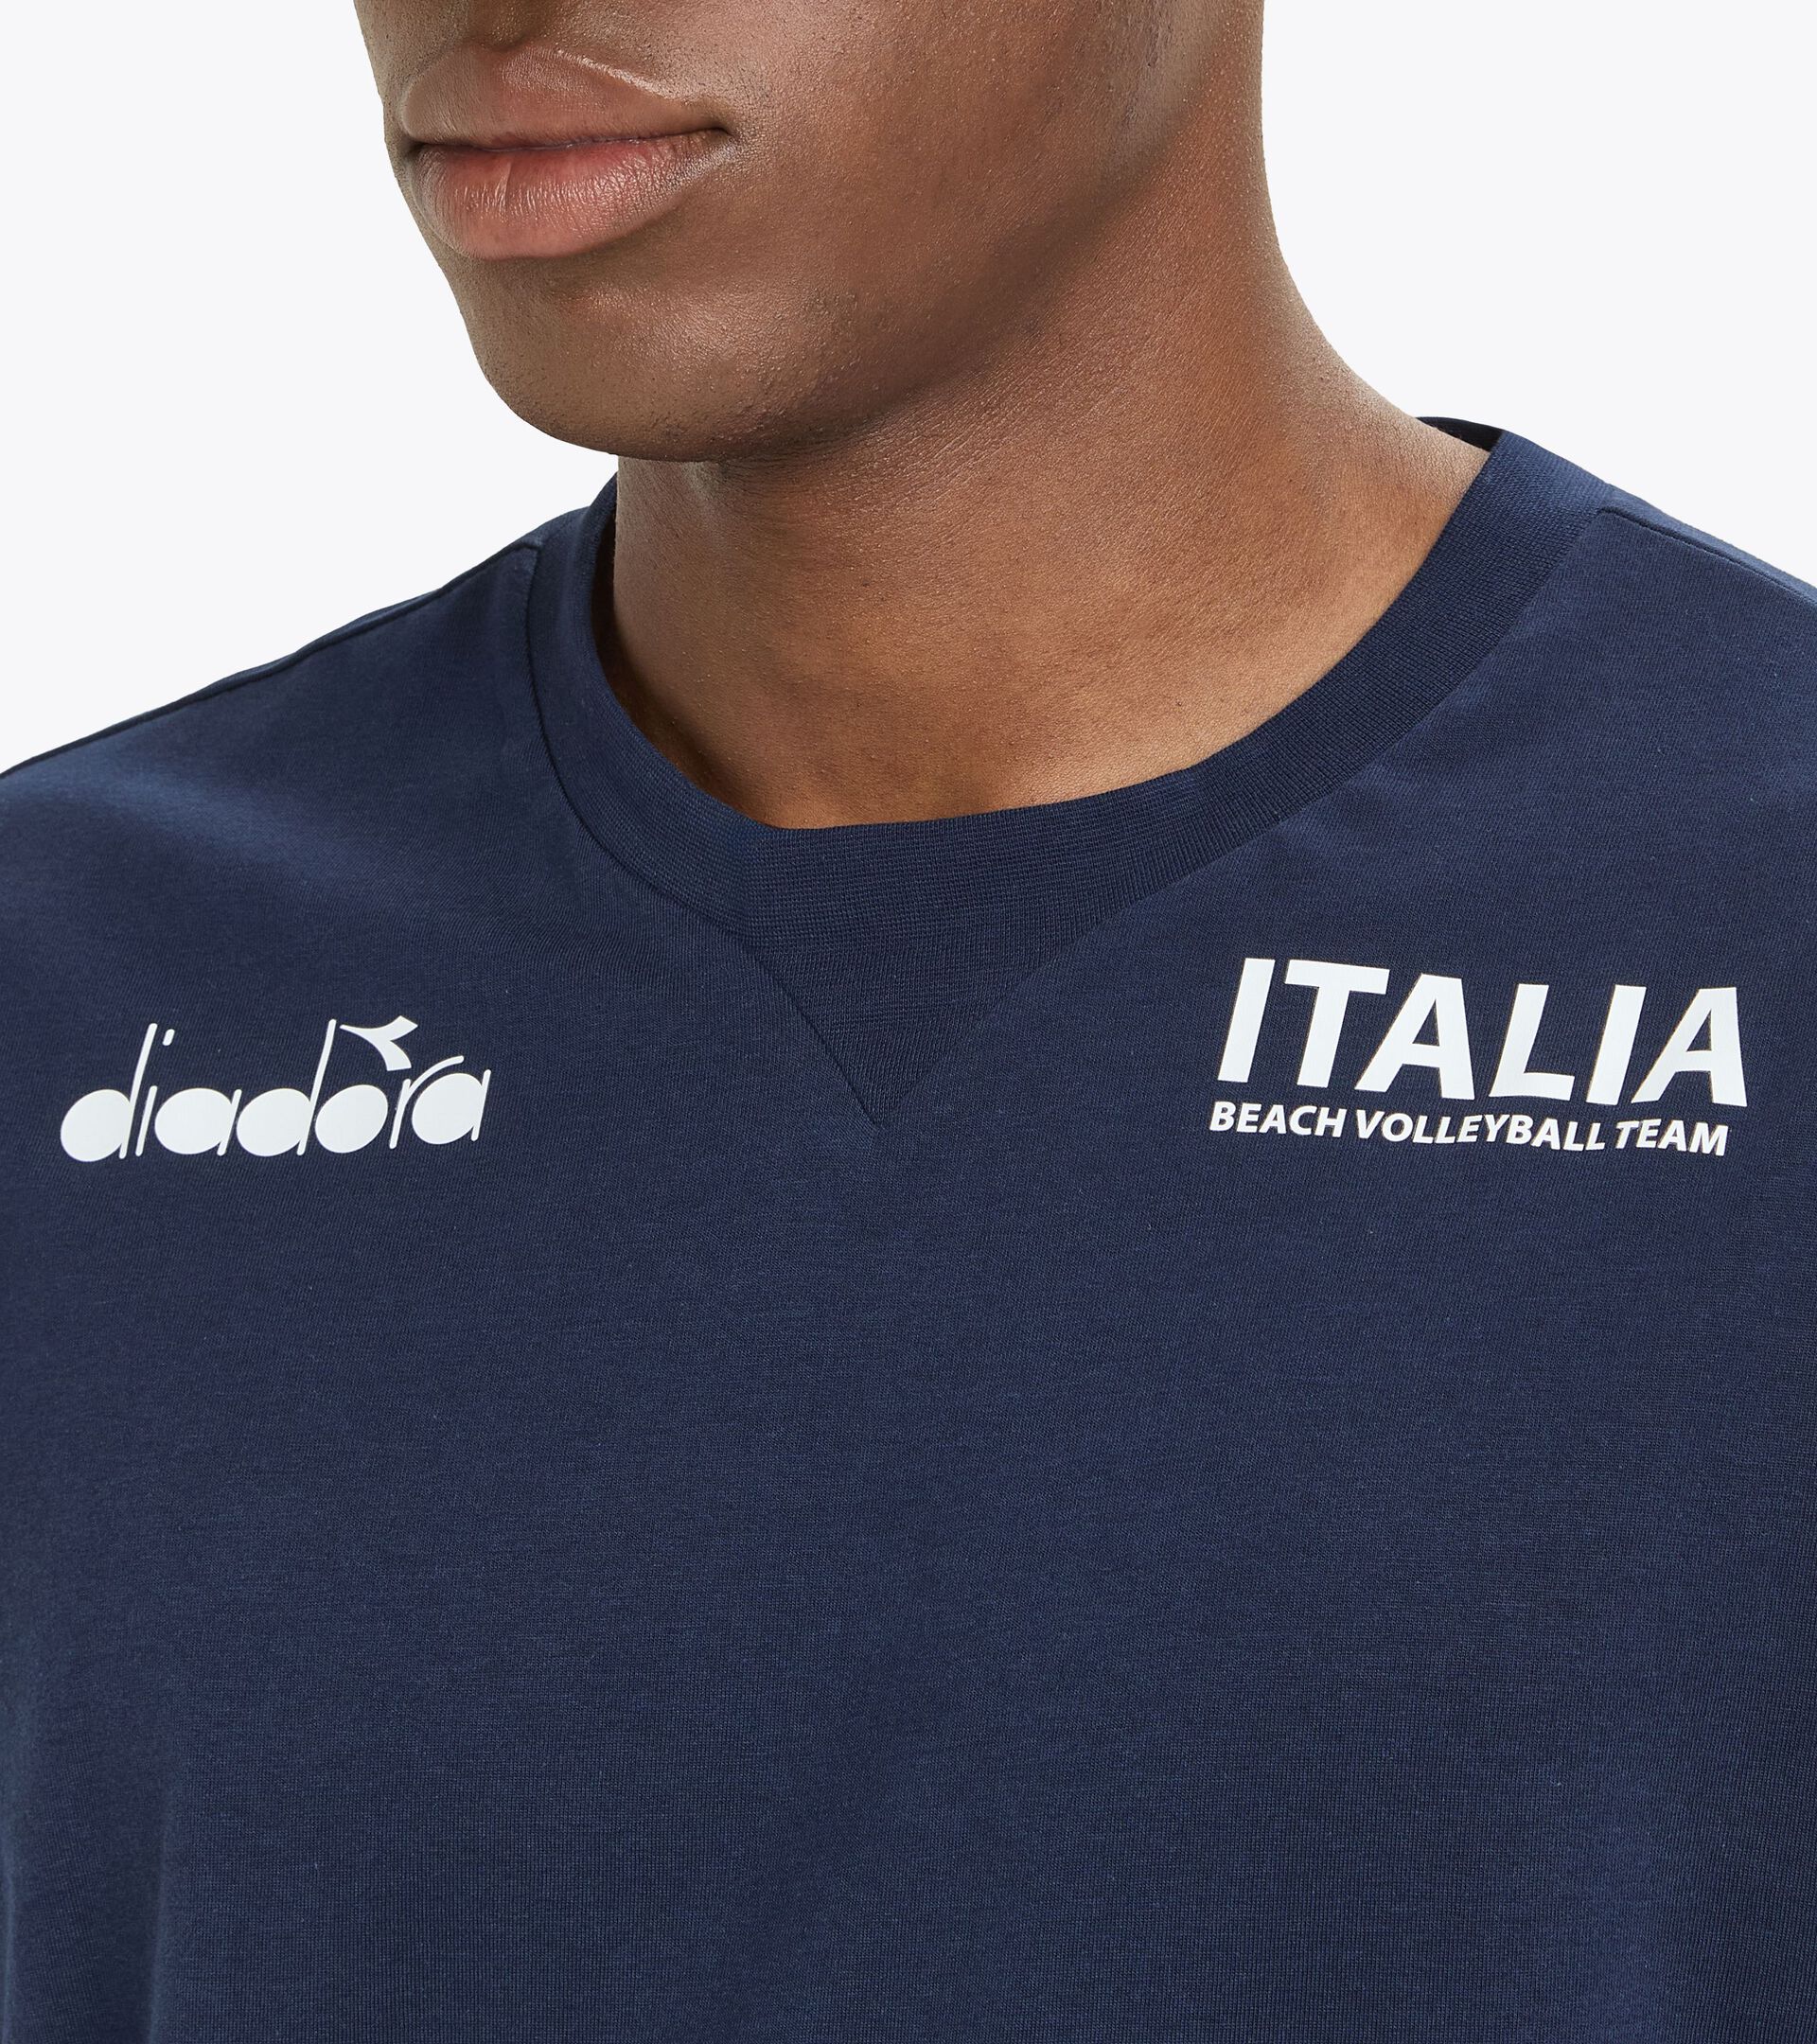 Camiseta de representación - Selección Italiana de Vóley Playa T-SHIRT RAPPRESENTANZA BV24 ITALIA AZUL CHAQUETON - Diadora